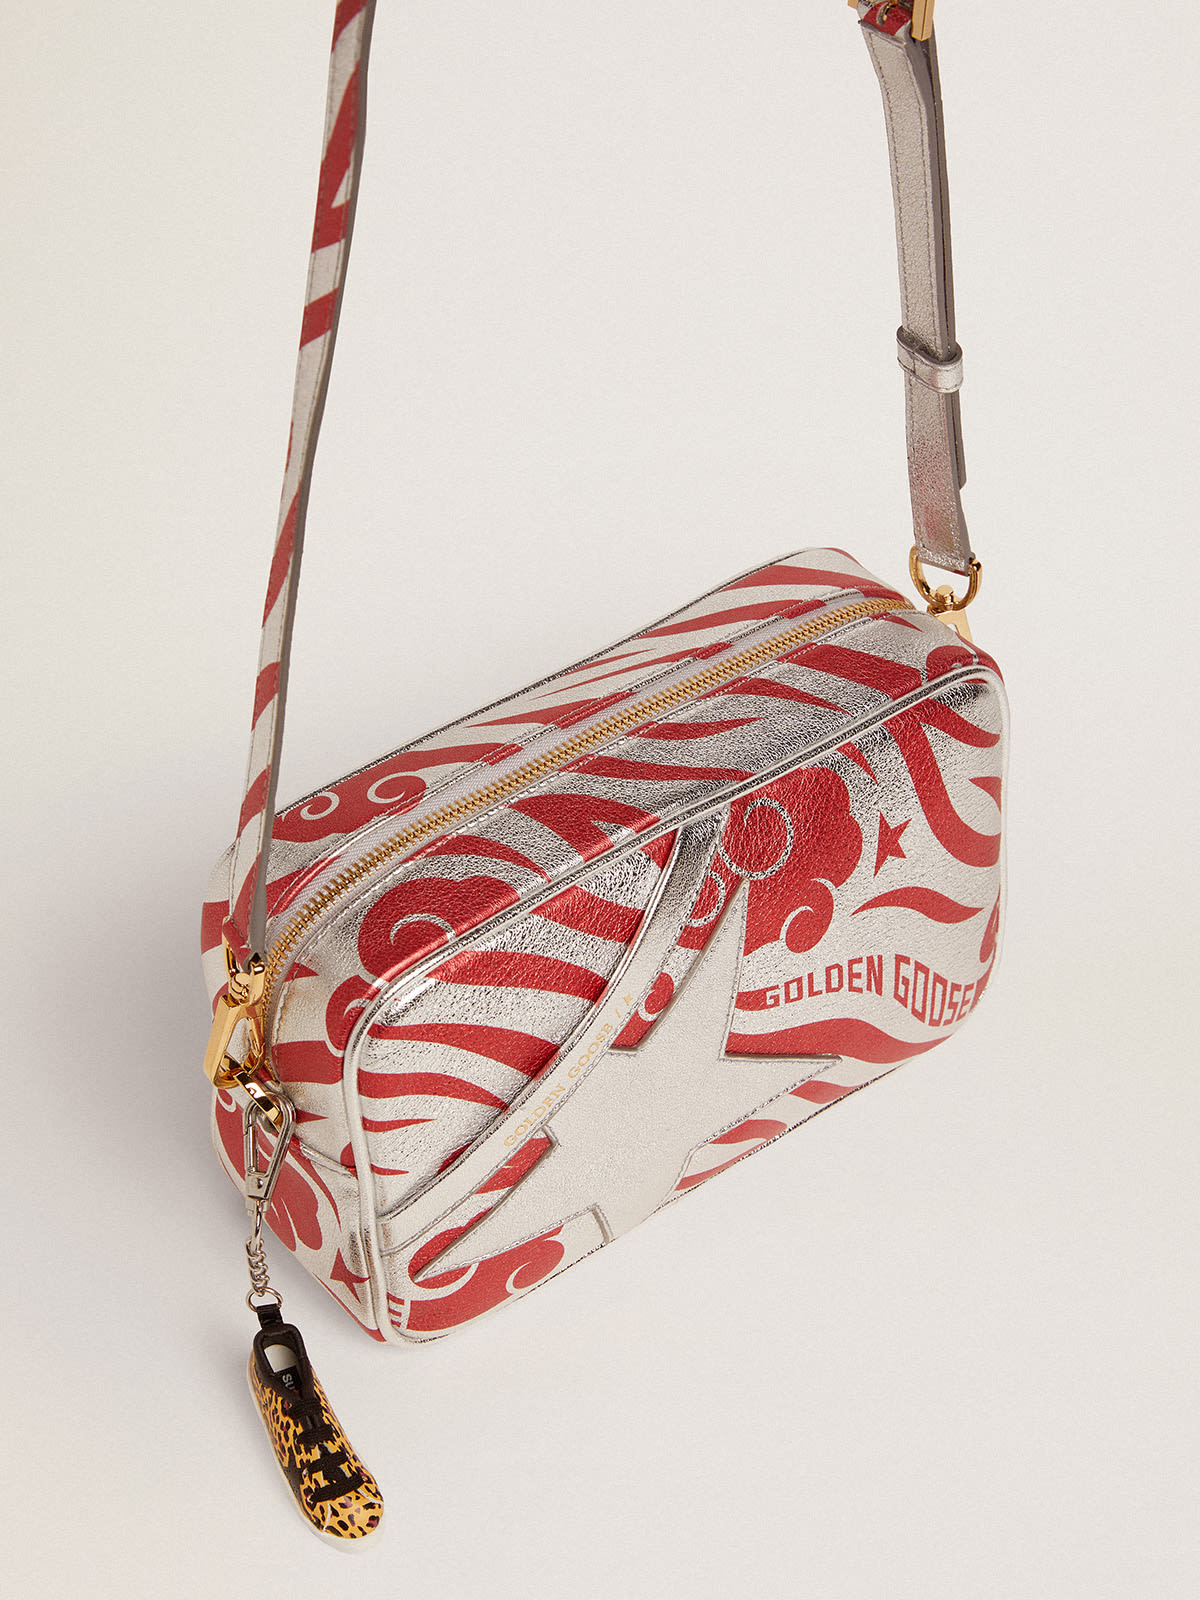 Golden Goose - Borsa Star Bag in pelle laminata color argento con stella ton sur ton e stampa tigrata CNY rossa in 